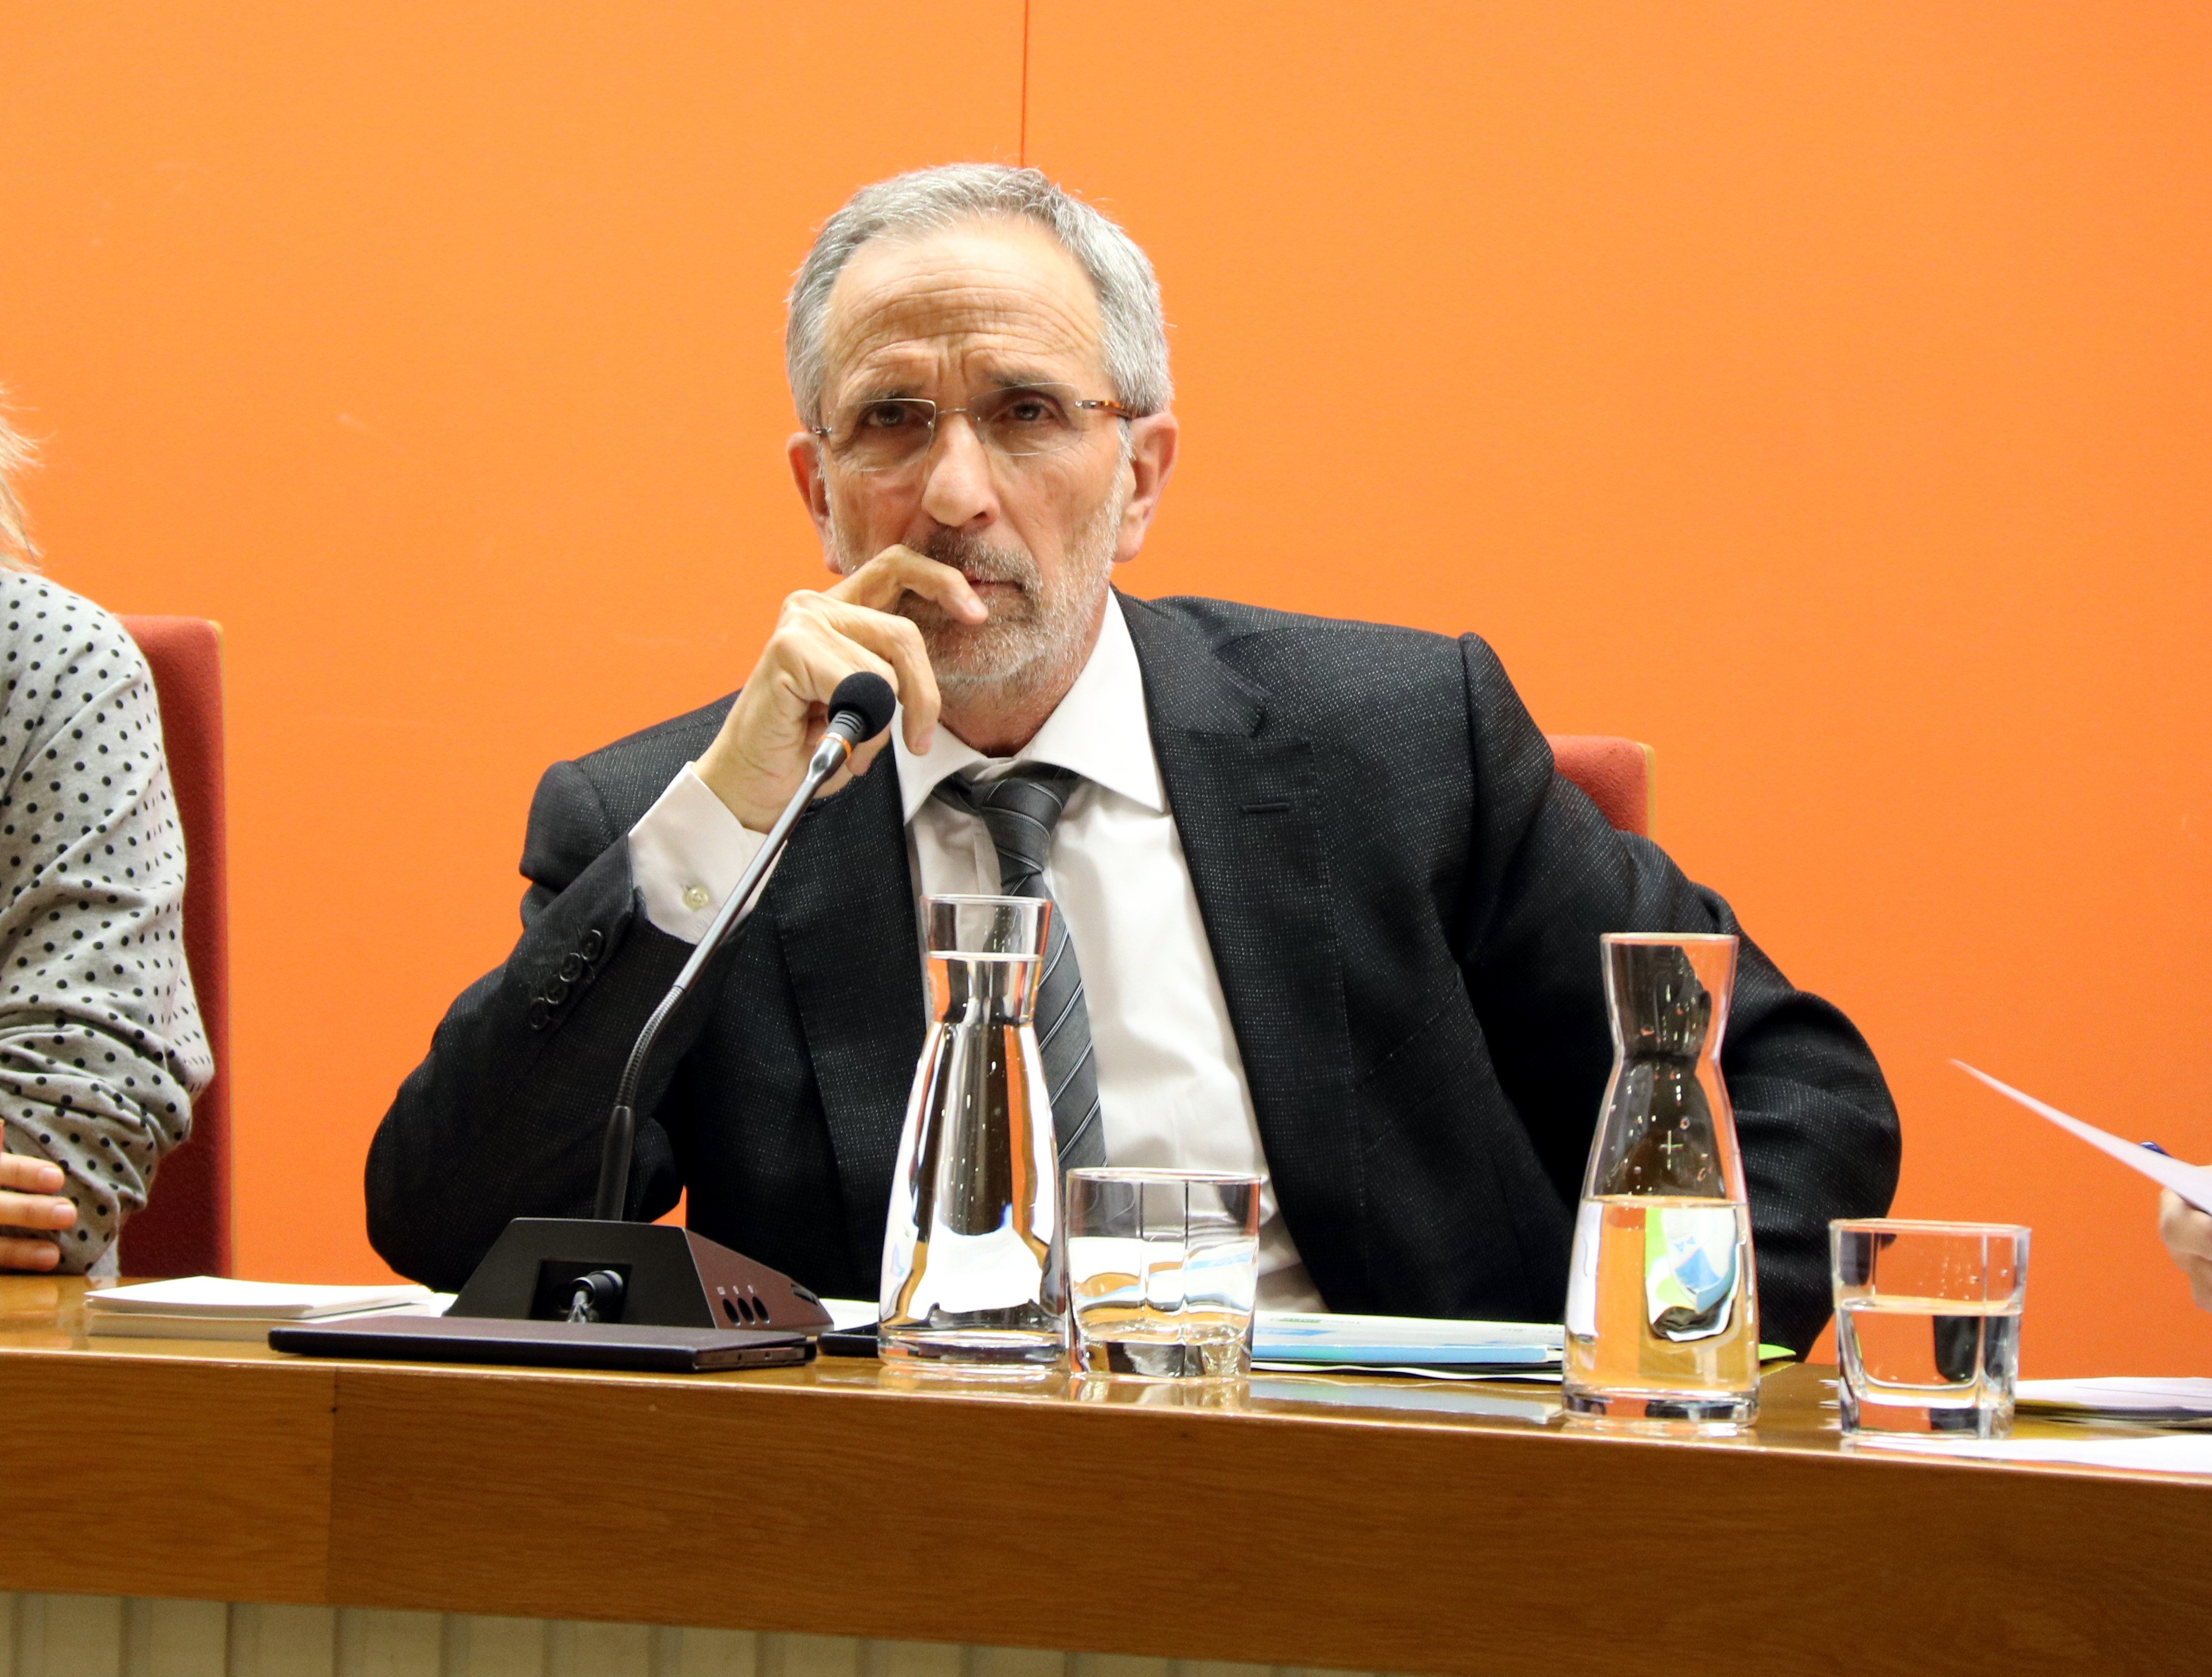 El alcalde de Granollers (PSC): "No tiene ningún sentido que haya políticos en prisión"